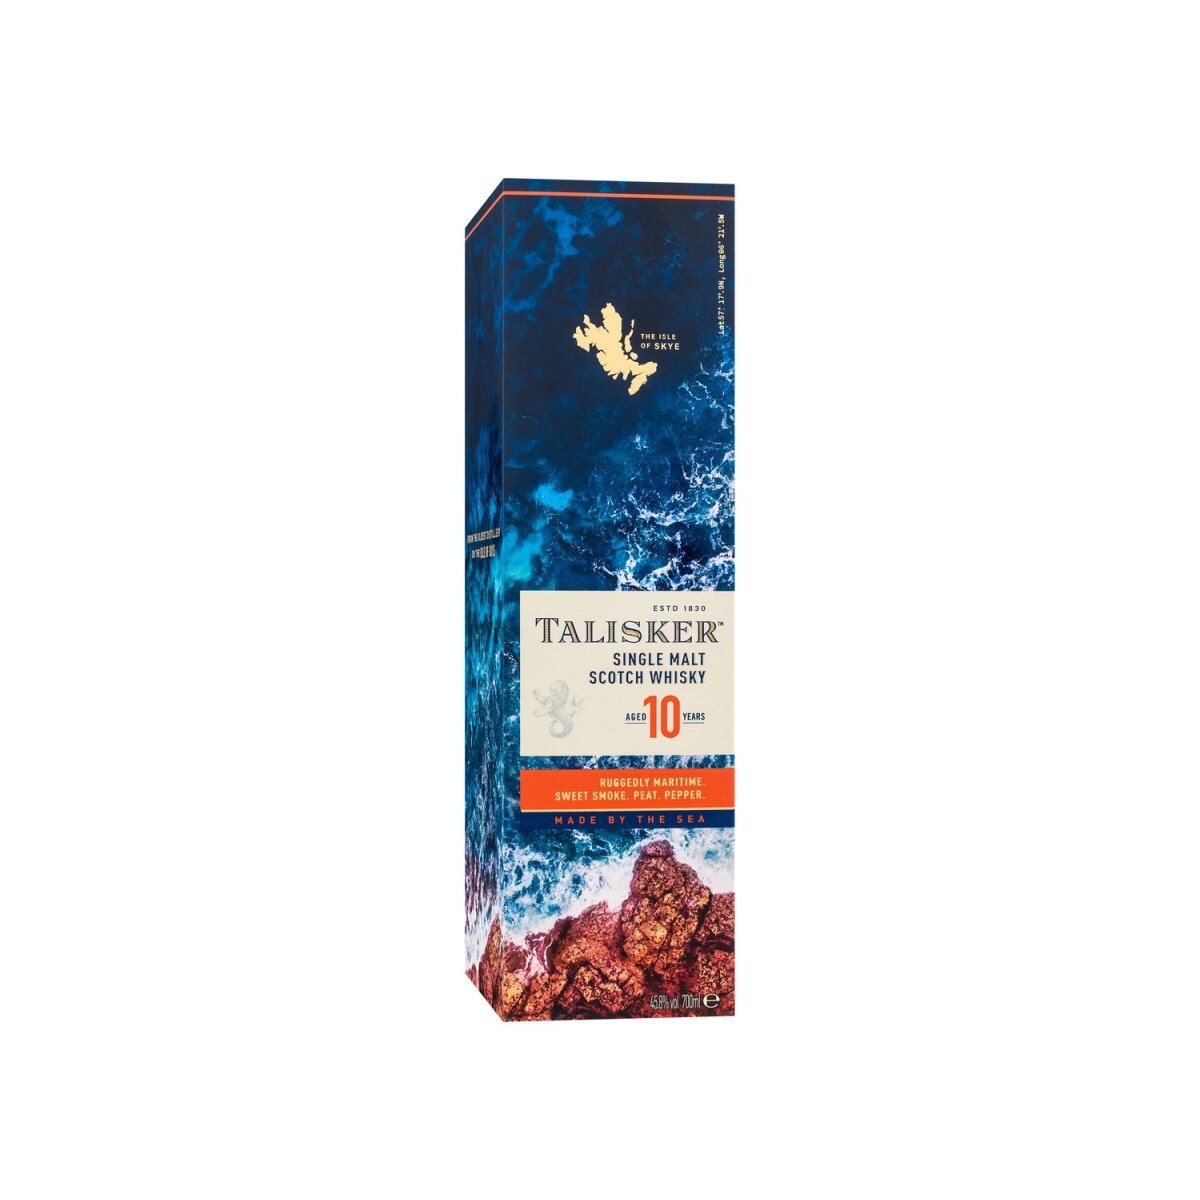 Talisker Single Malt Scotch Whisky 10 Jahre mit Geschenkbox 45,8% Vol,  26,99 €